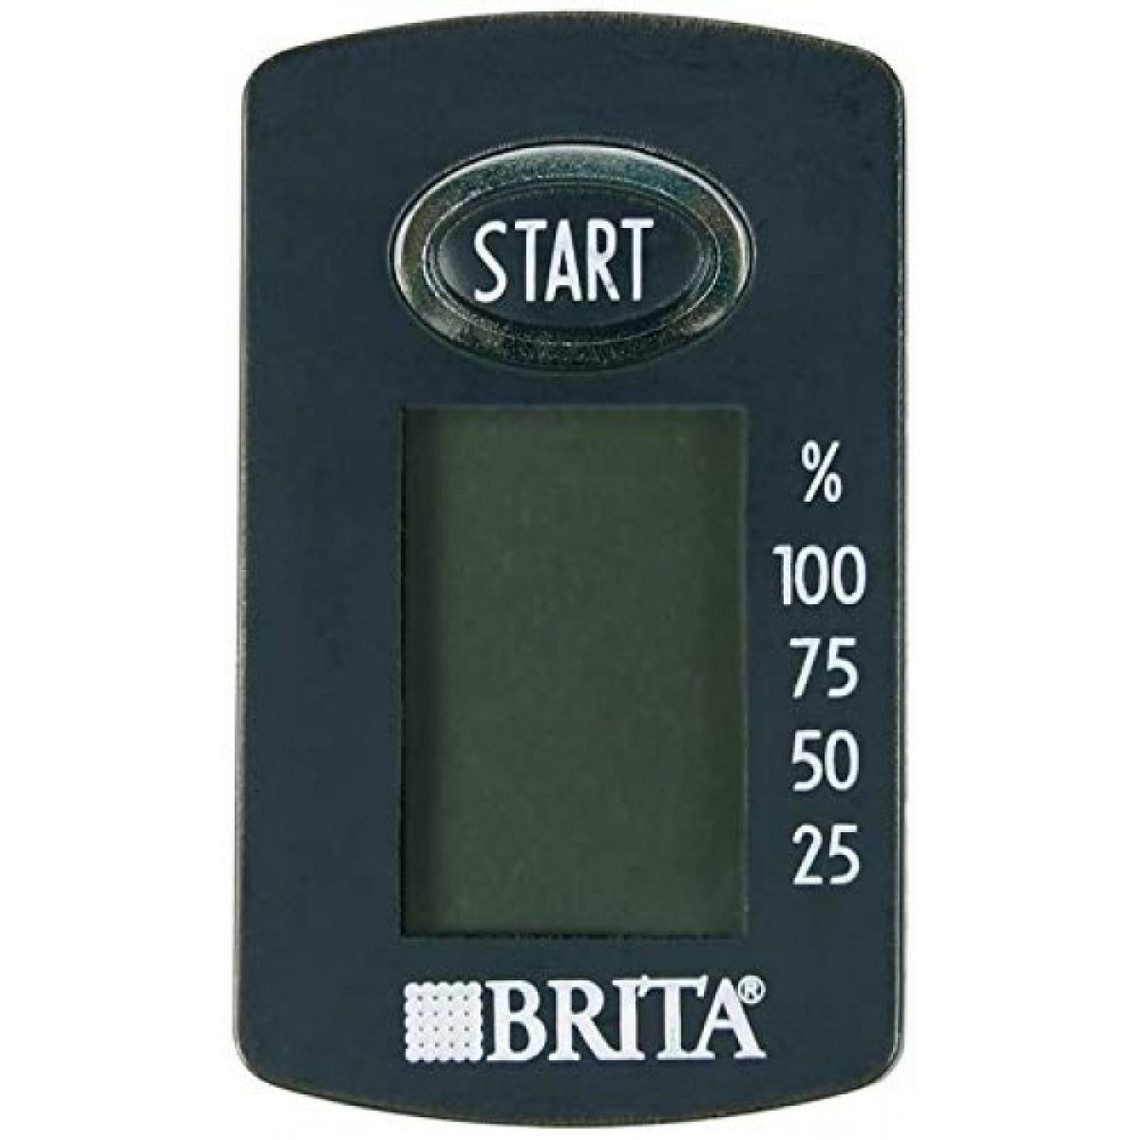 Thermostats Brita Magimix magimixbrita brita memo display & batterie, plastique